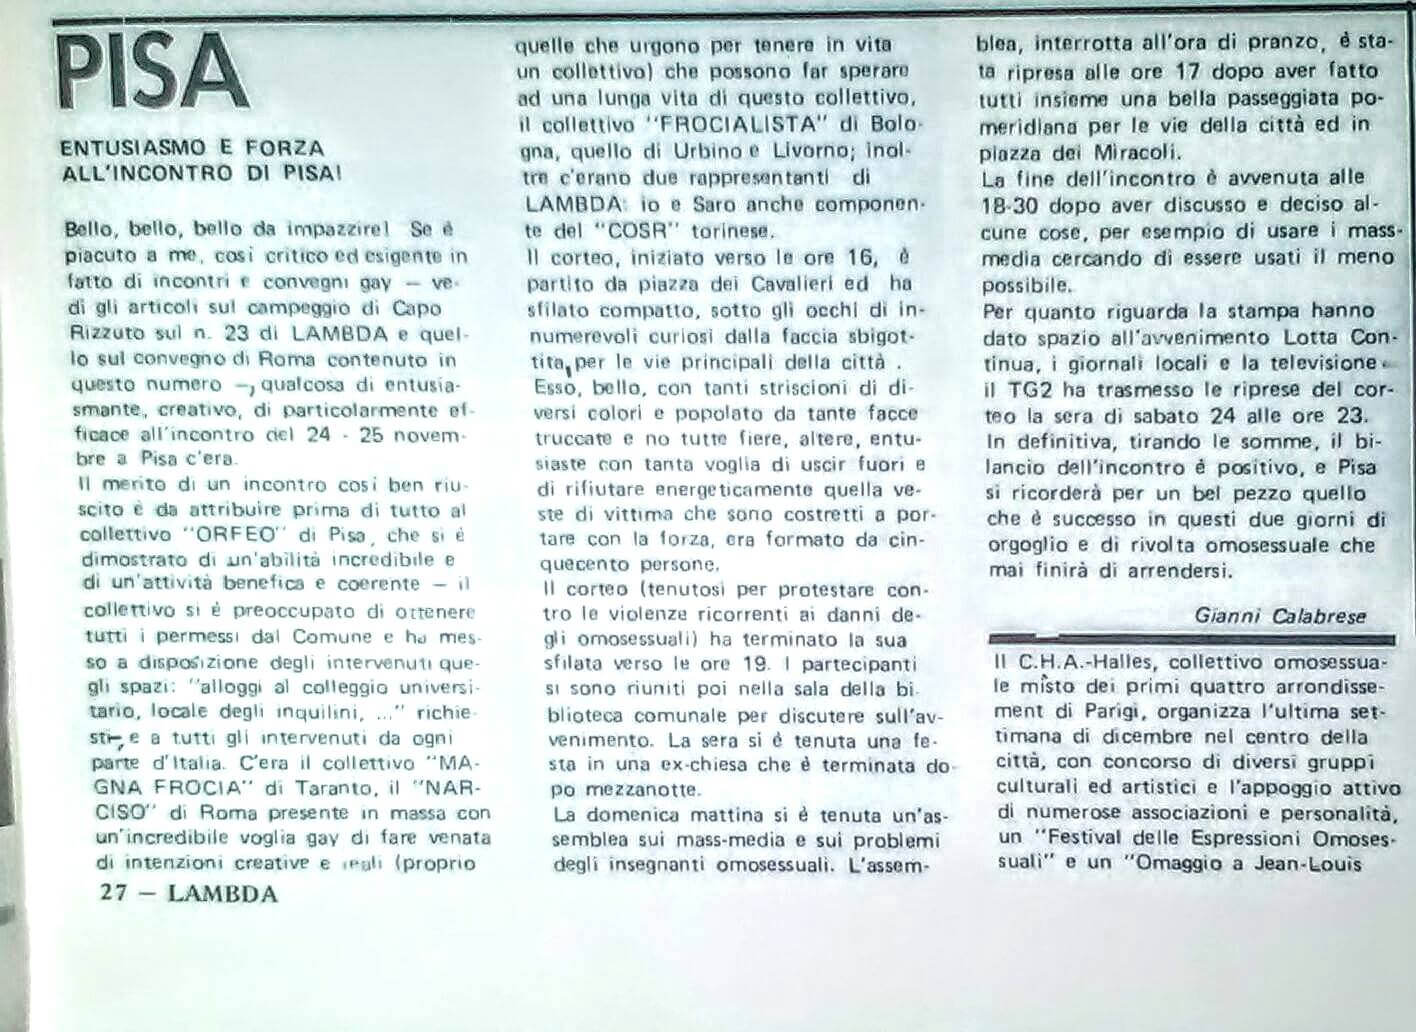 Articolo di Gianni Calabrese sulla manifestazione contro la violenza sulle persone LGBT tenutasi a Pisa il 24 novembre 1979.